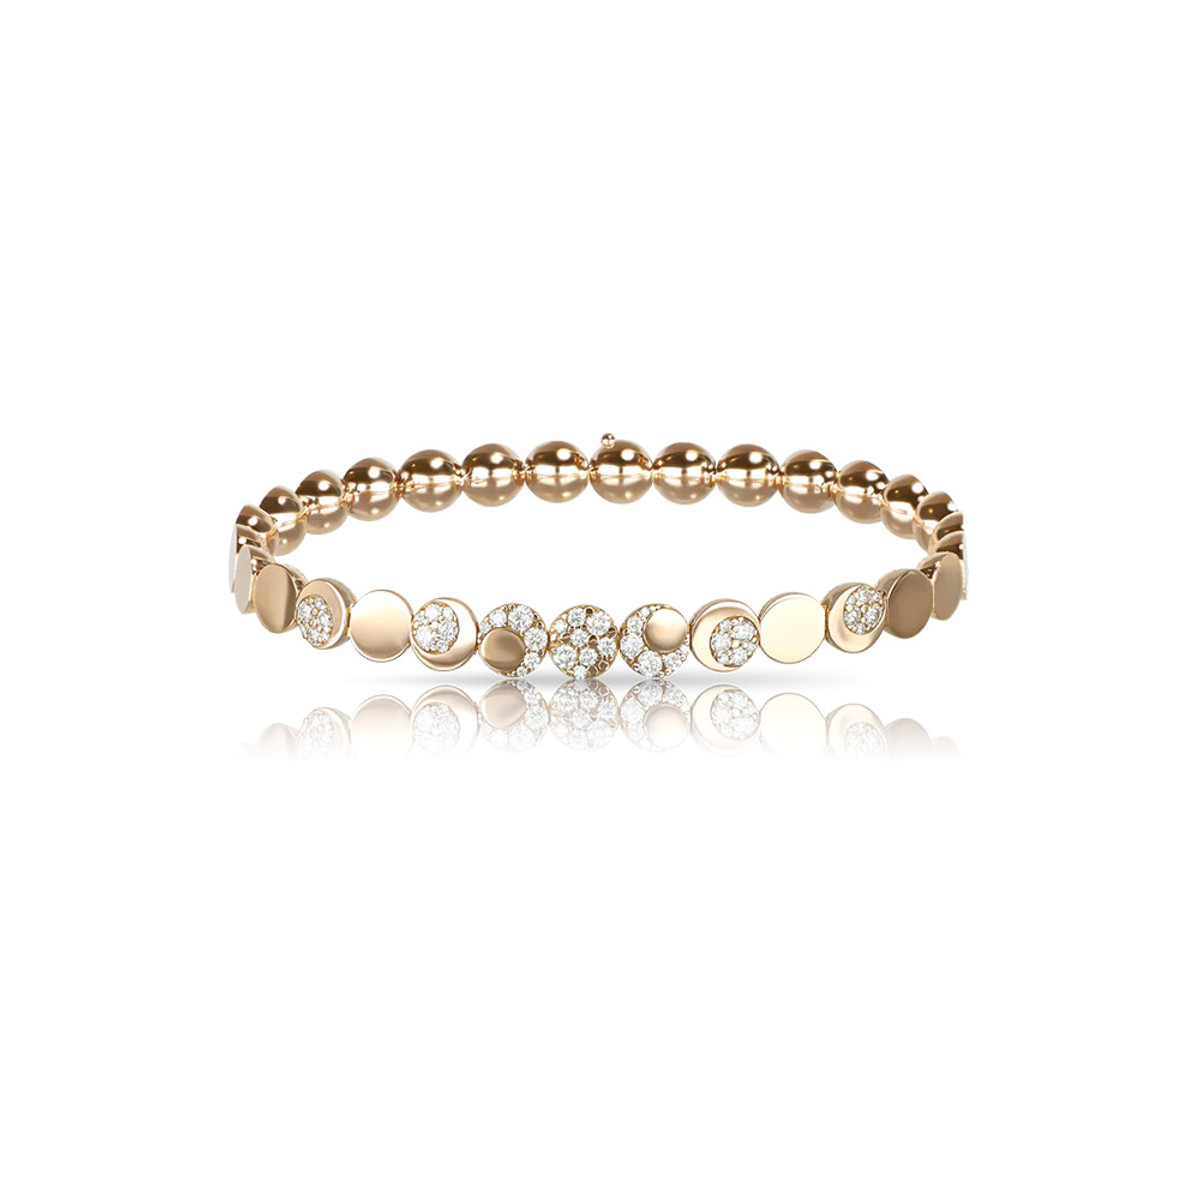 Pasqaule Bruni 18K Rose Gold Luce Diamond Bracelet-59284 Product Image